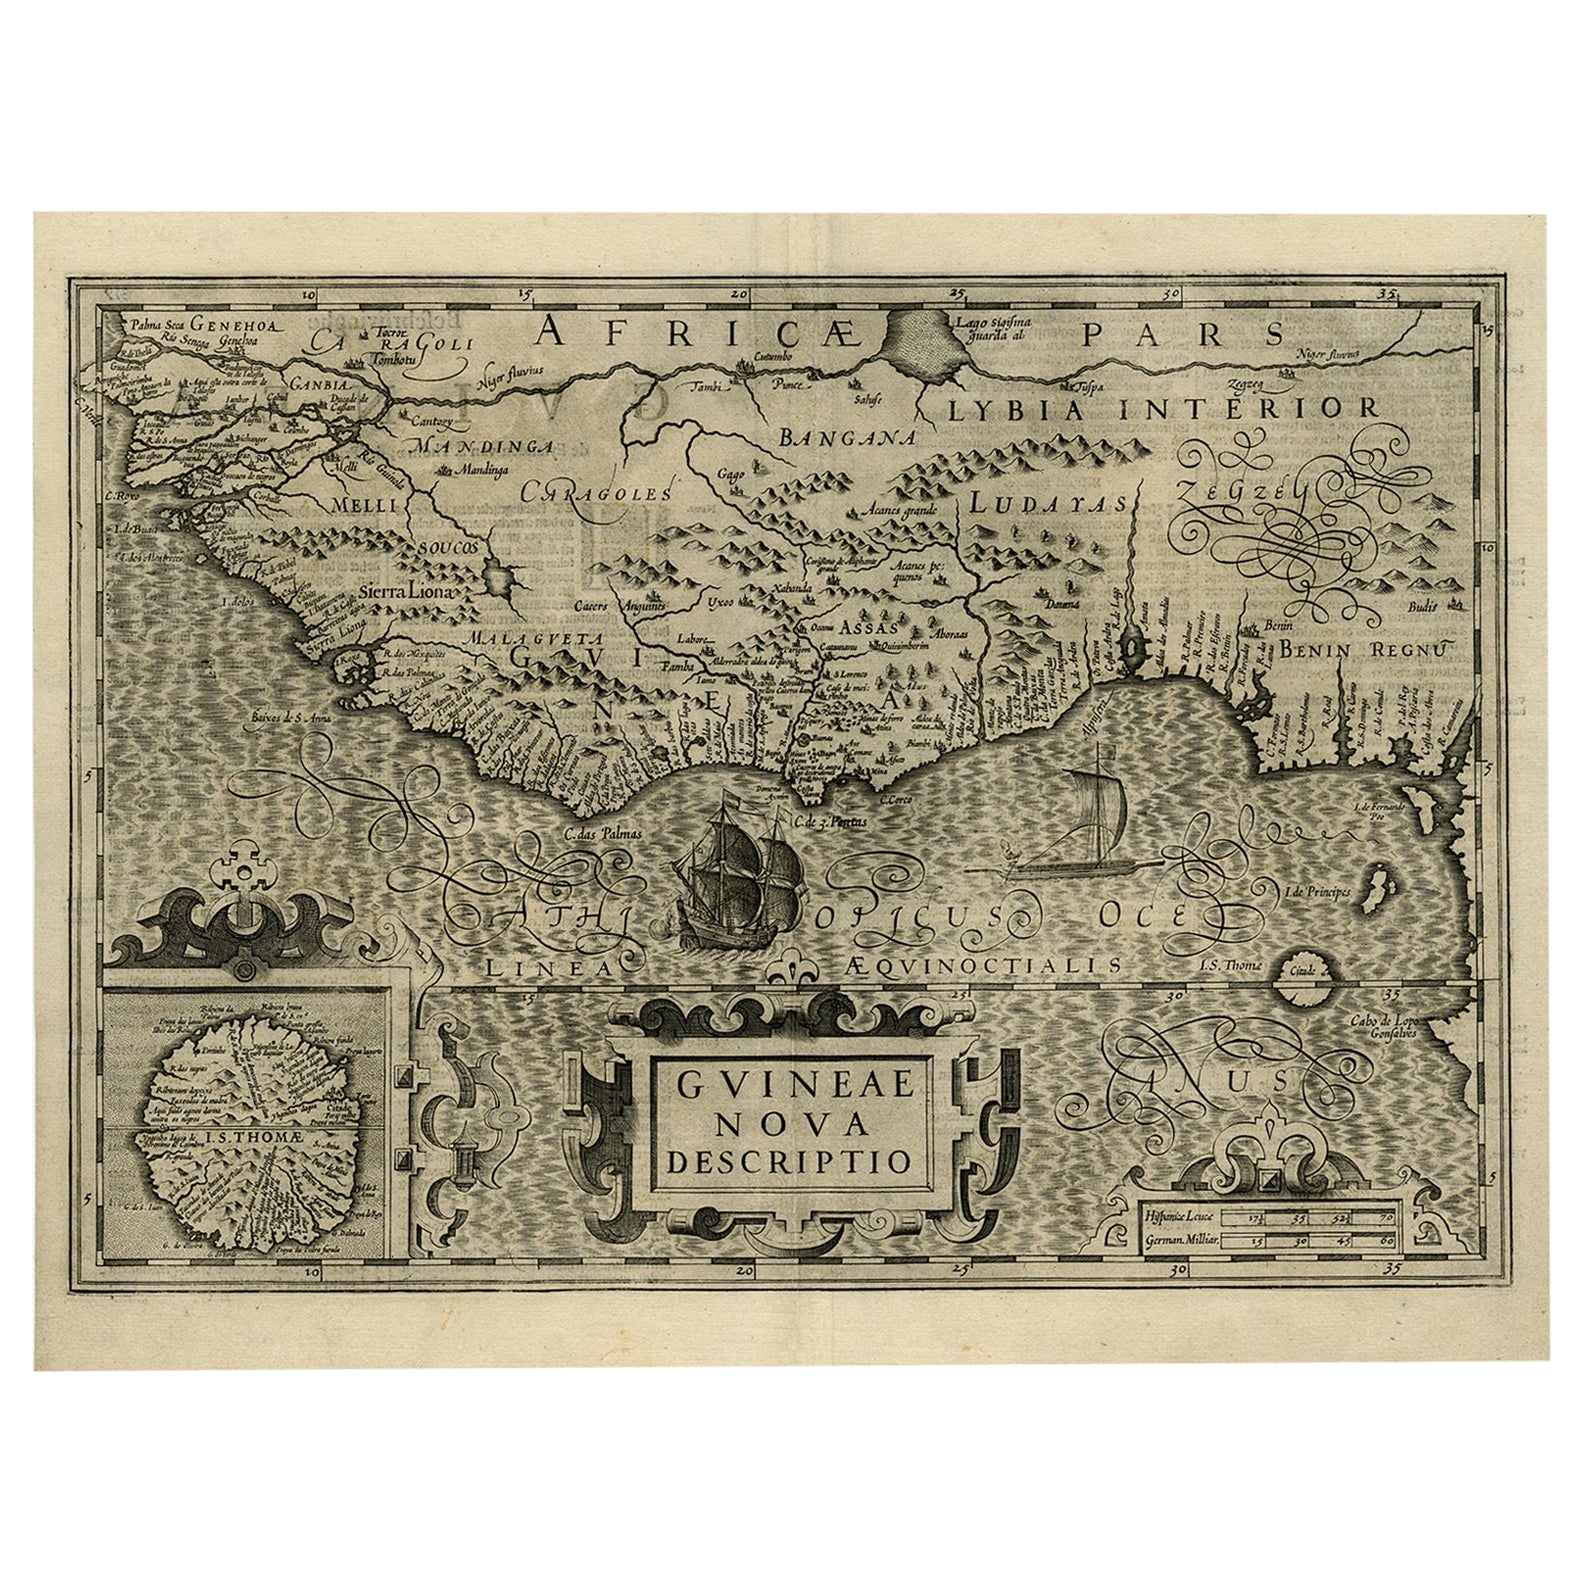 Alte dekorative Karte der Westafrikanischen Küste und der St. Thomae-Insel, um 1600